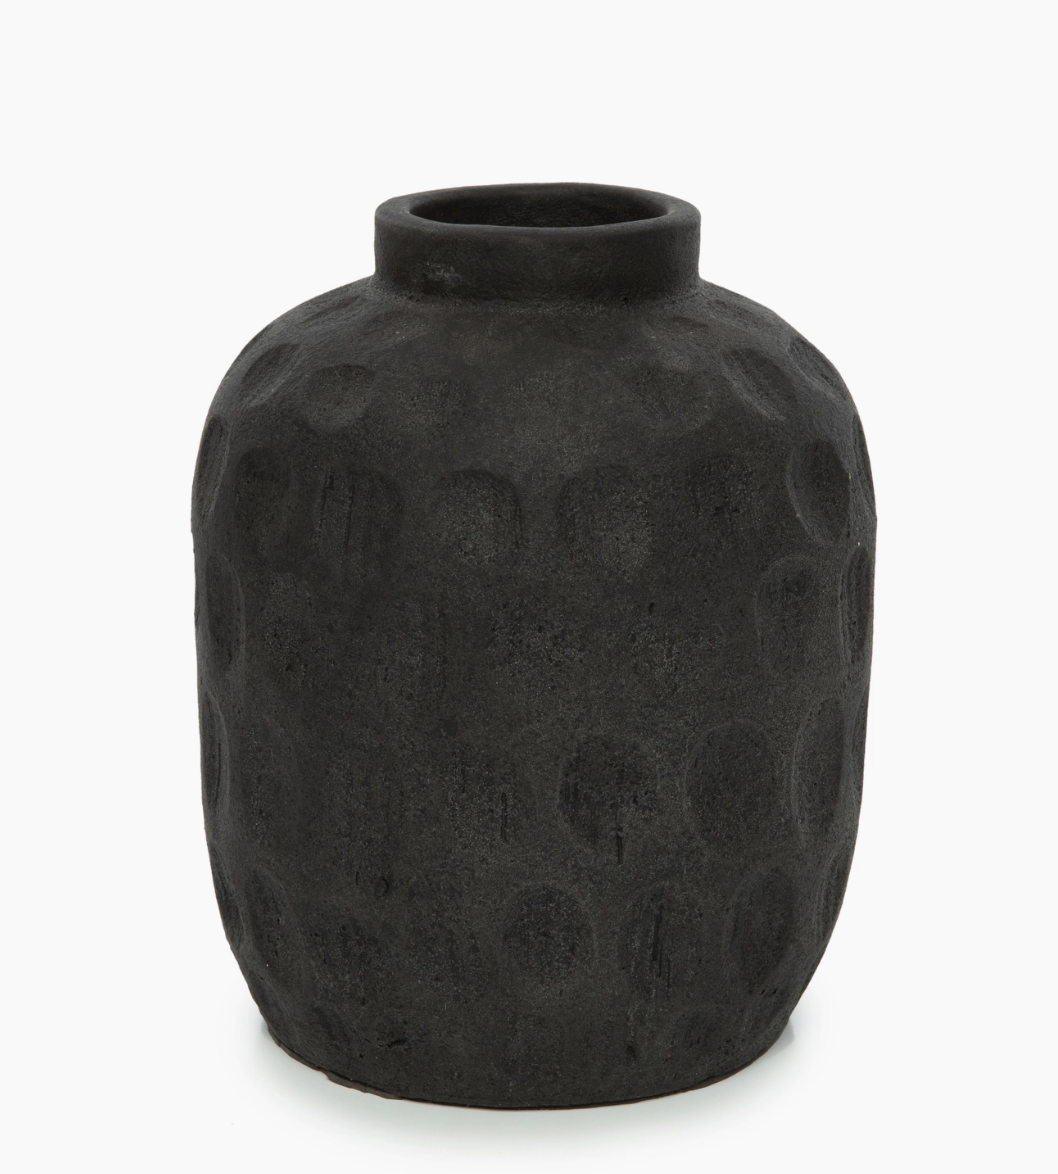 The Trendy Vase